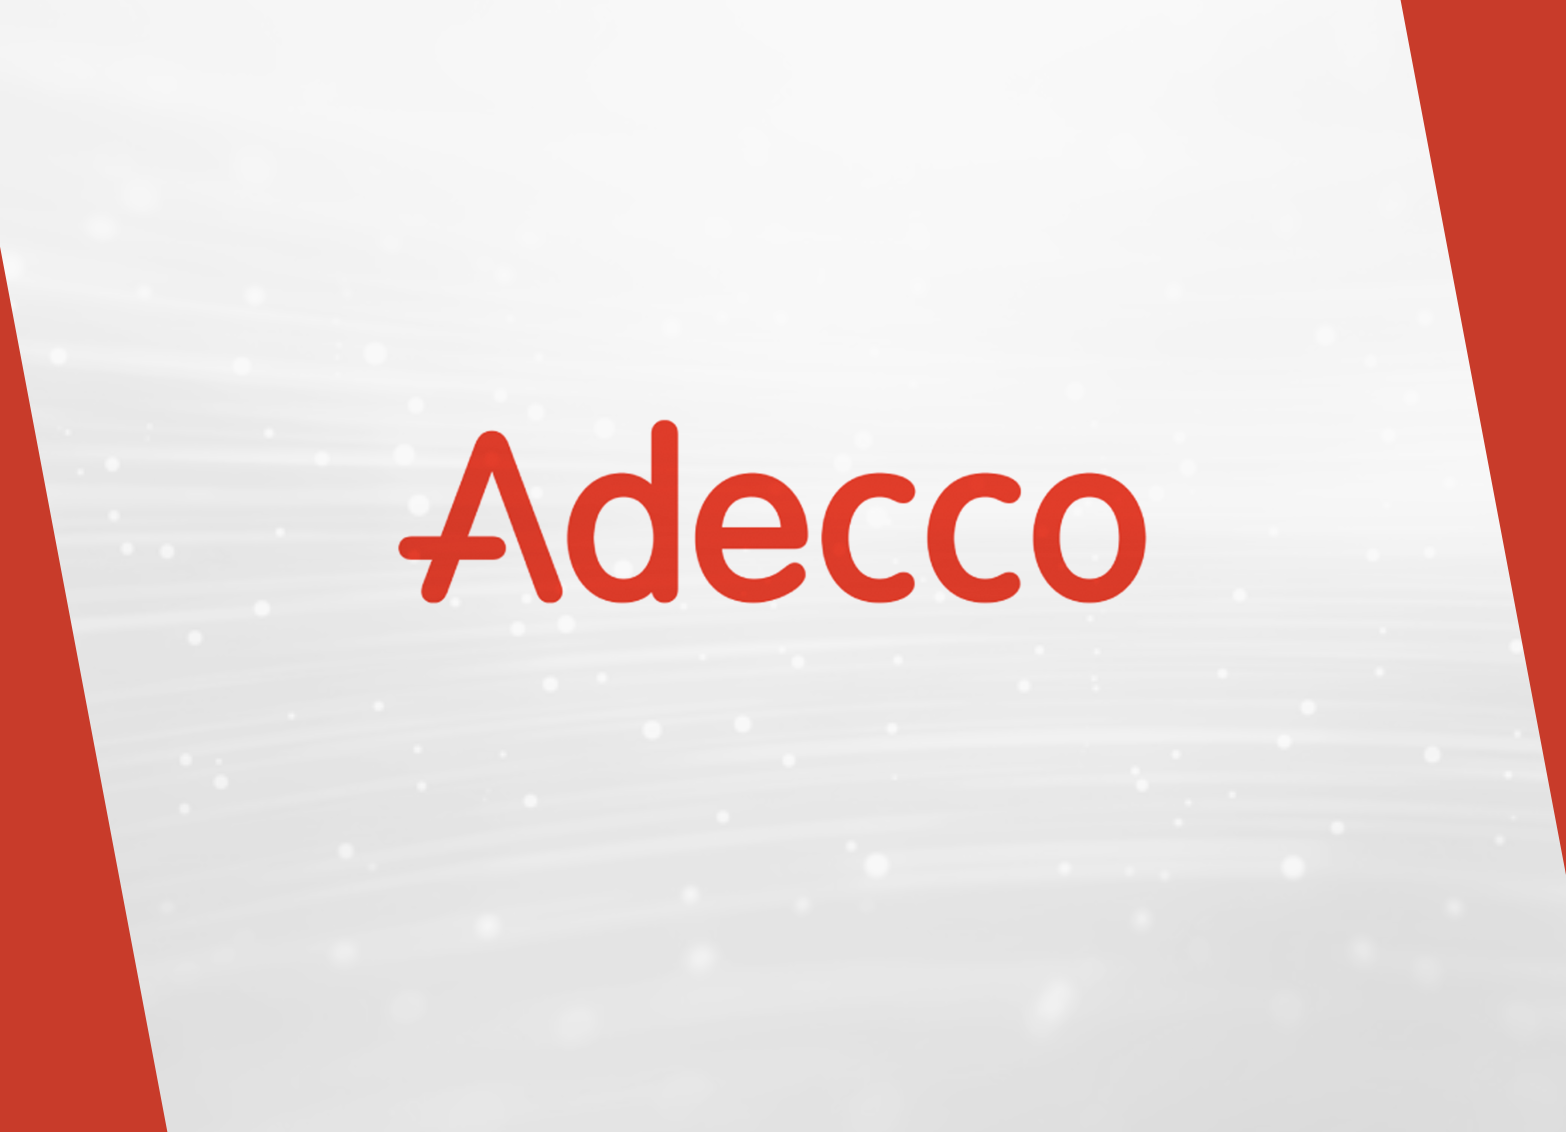 Imagen. Fundación Adecco lanza la campaña #Reacciona Adeccorientaempleo